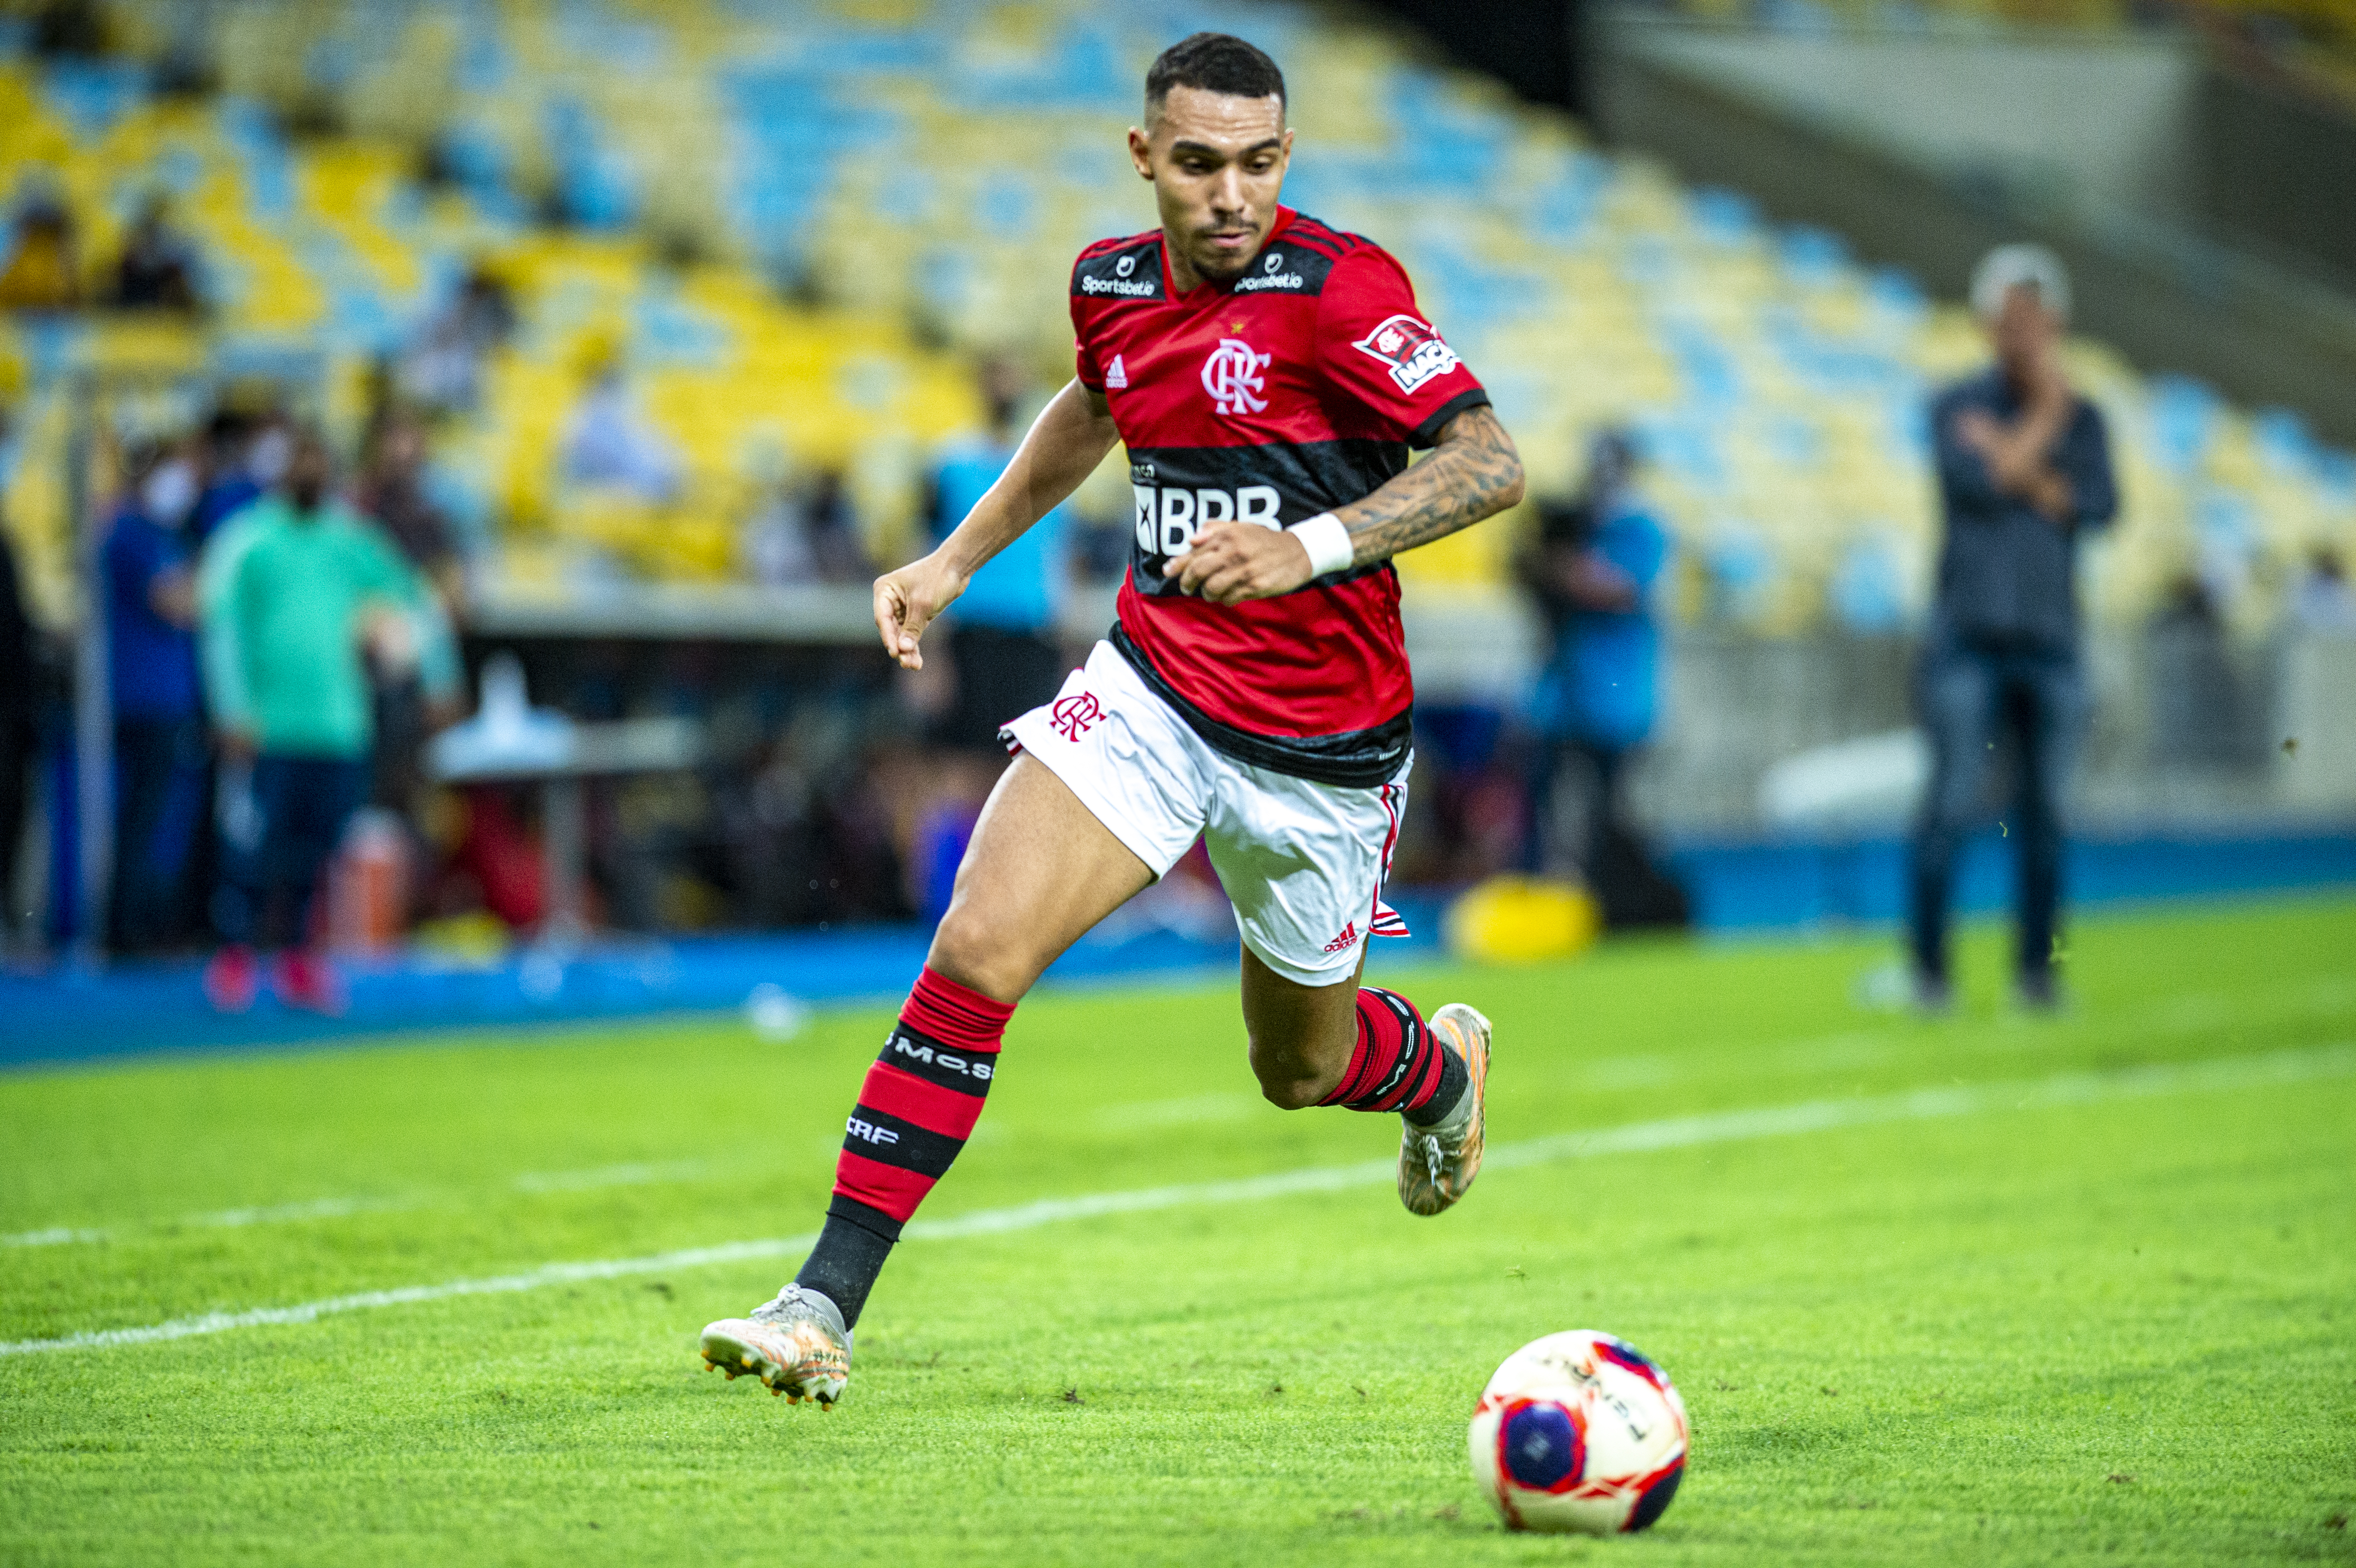 Matheuzinho chega para ser 'sombra' de Fagner. O ala de 23 anos perdeu espaço no Flamengo de Tite e quer respirar novos ares.